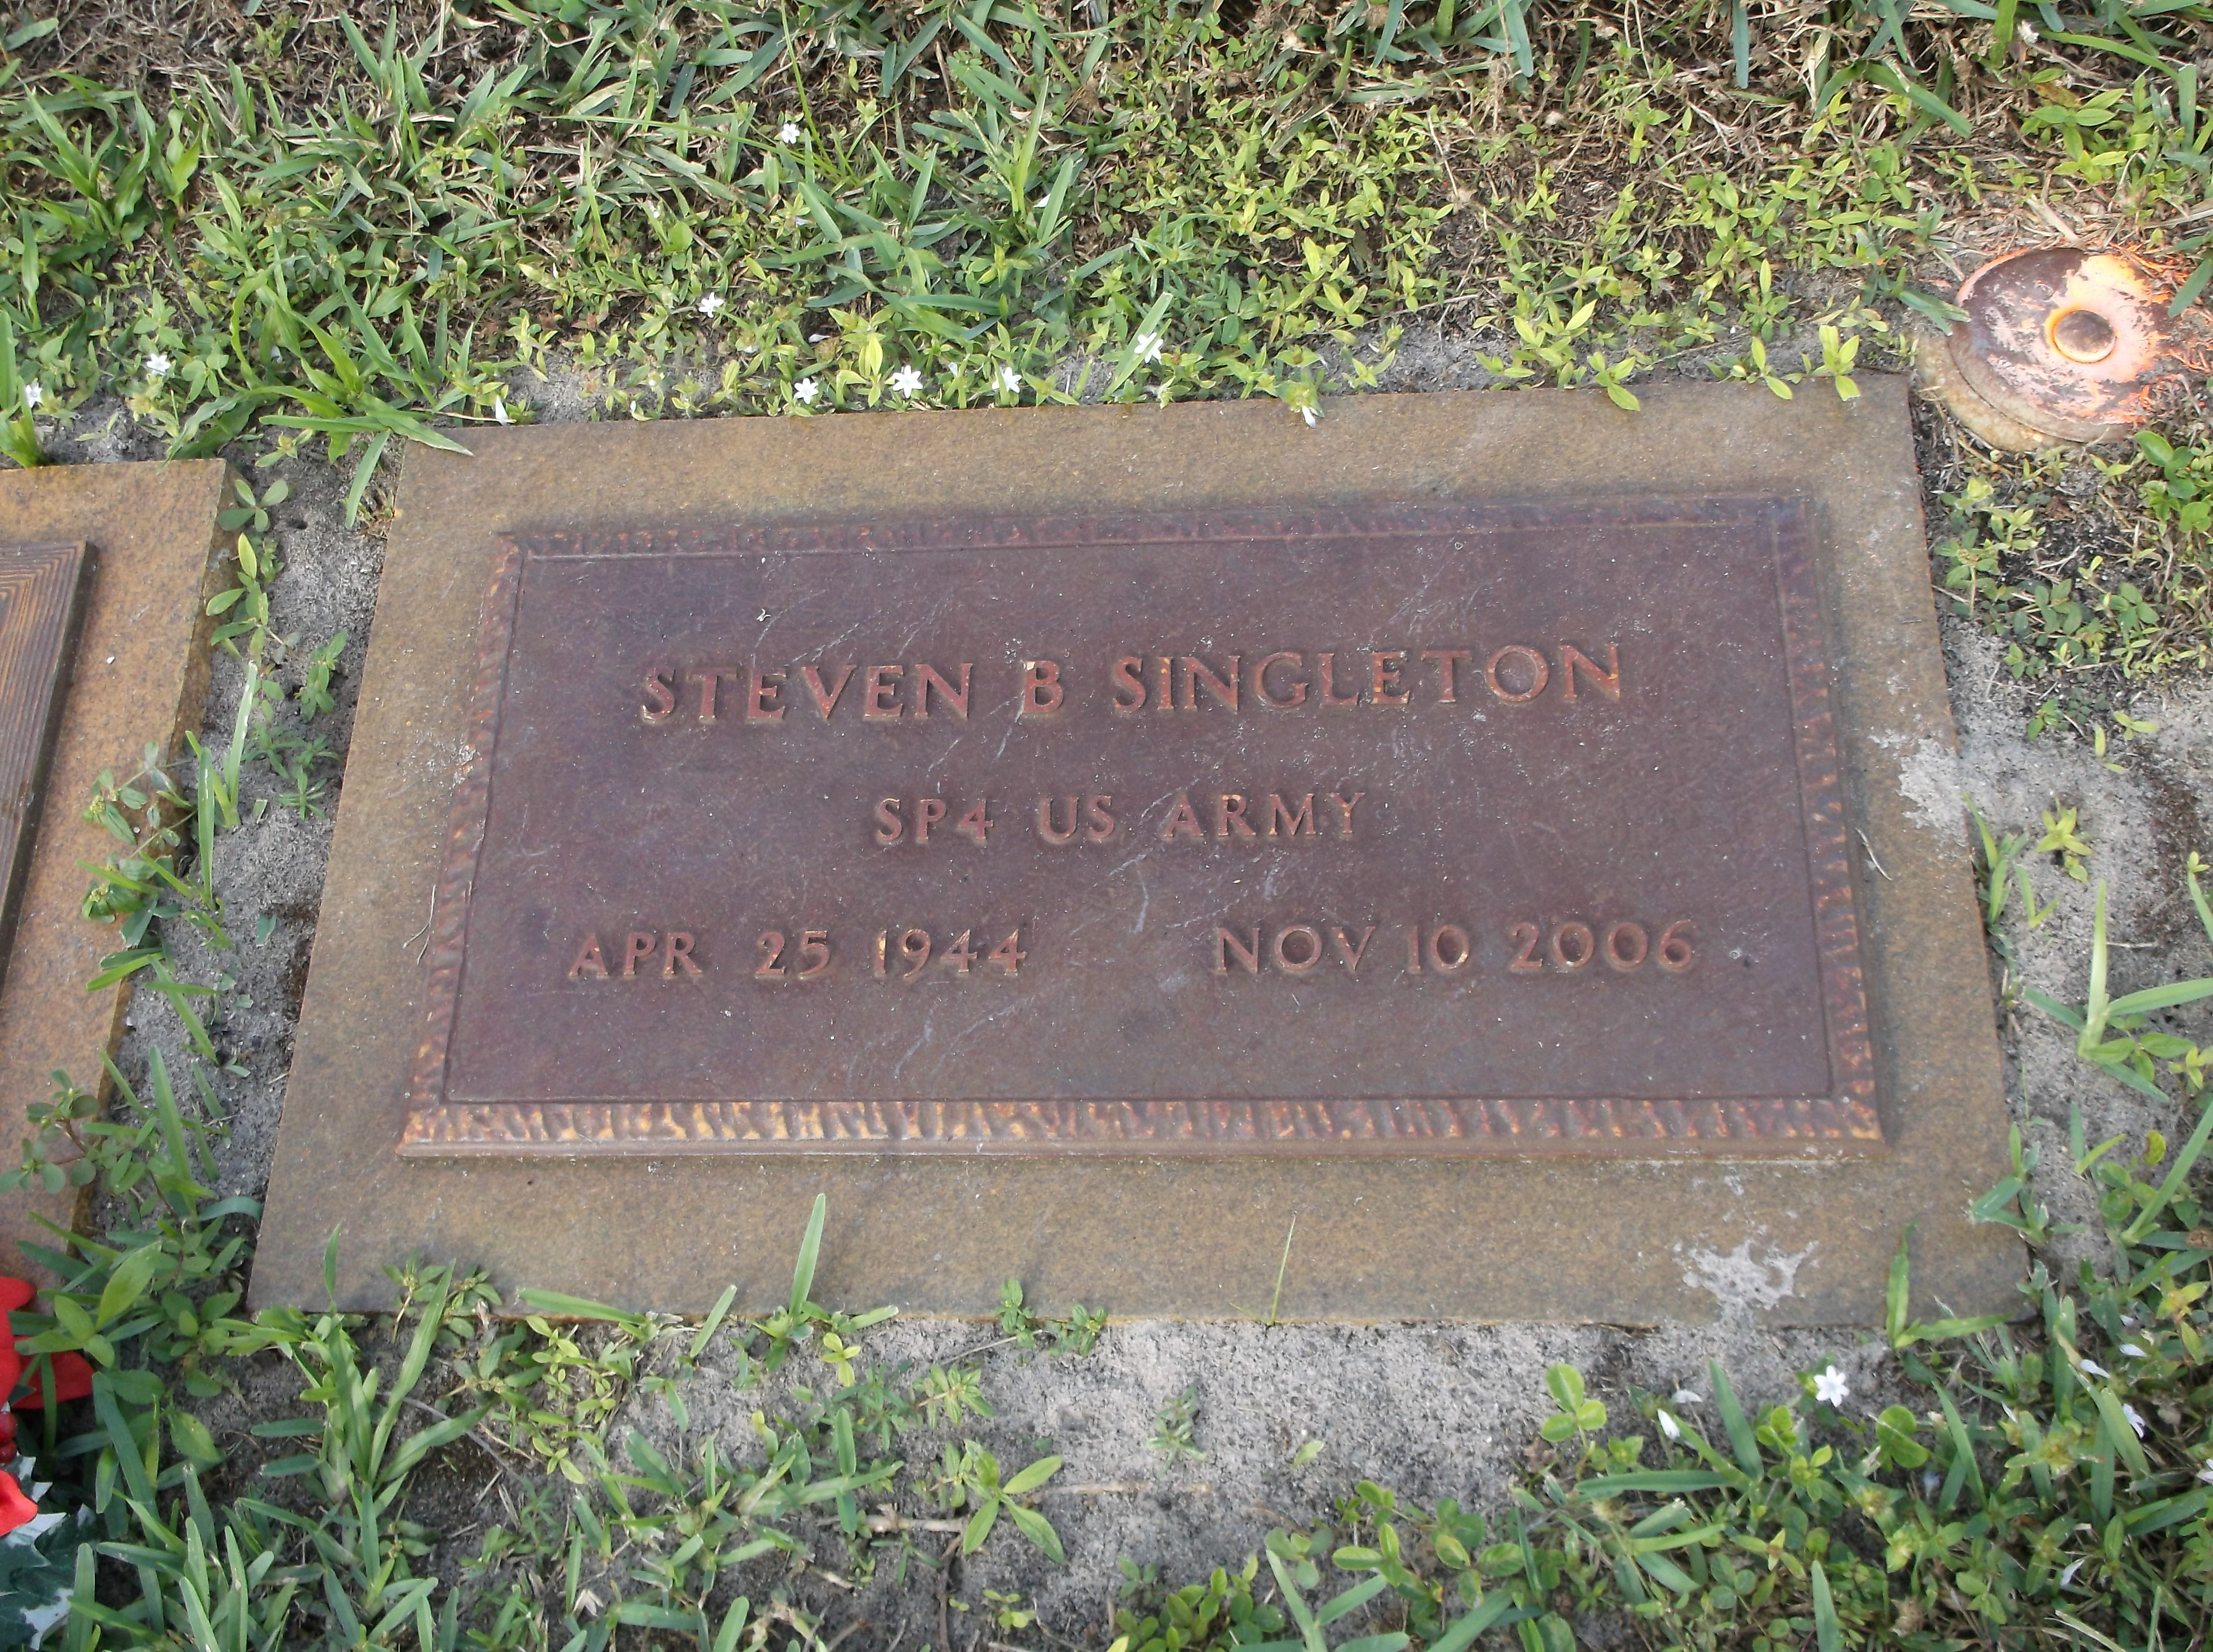 Steven B Singleton